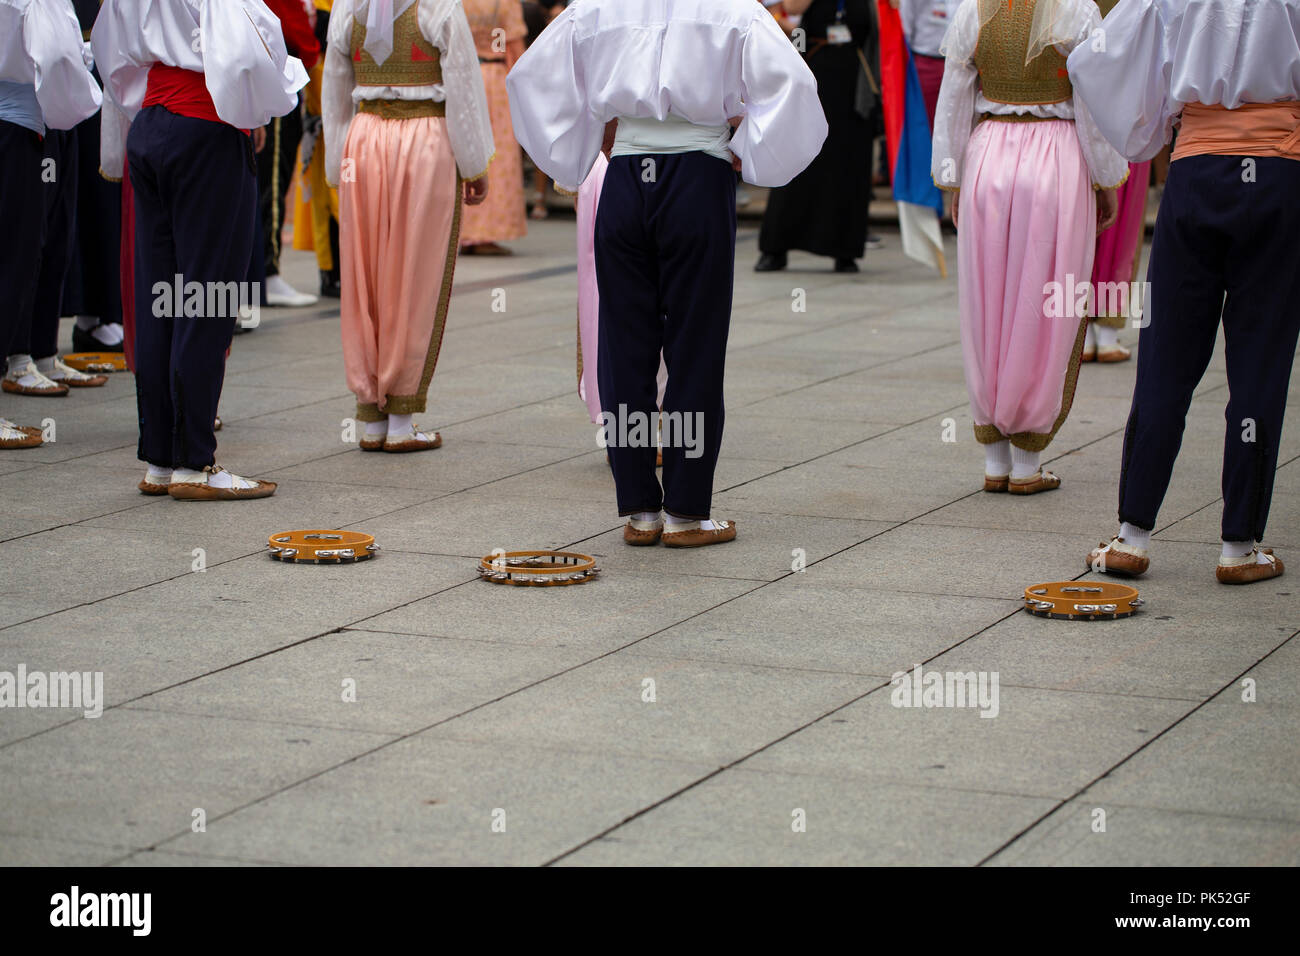 Serbian folk dance group Stock Photo